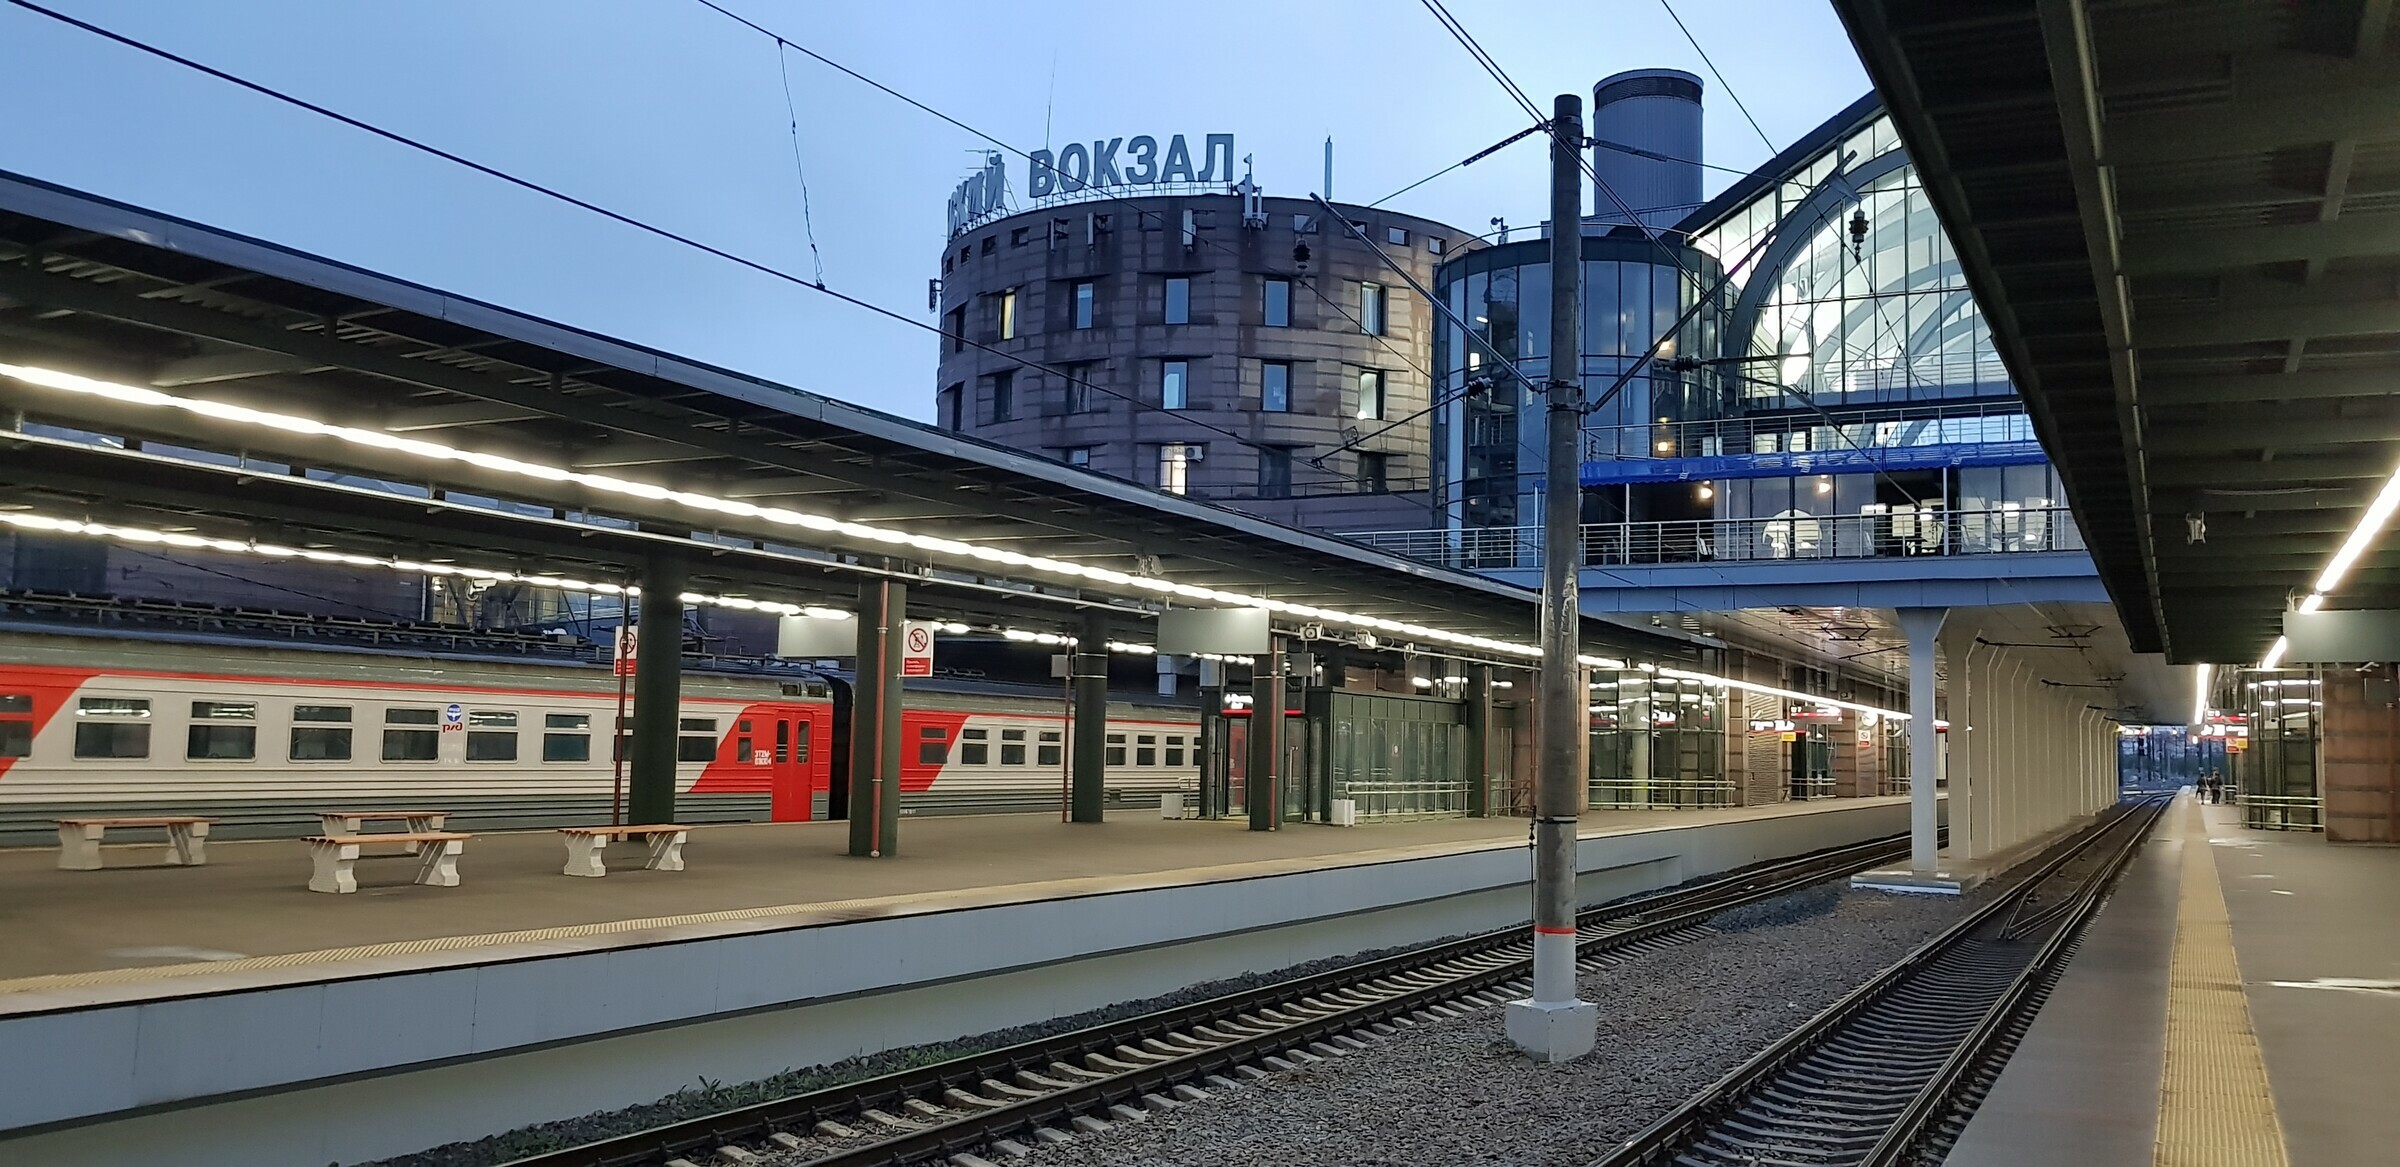 Ладожский вокзал спб